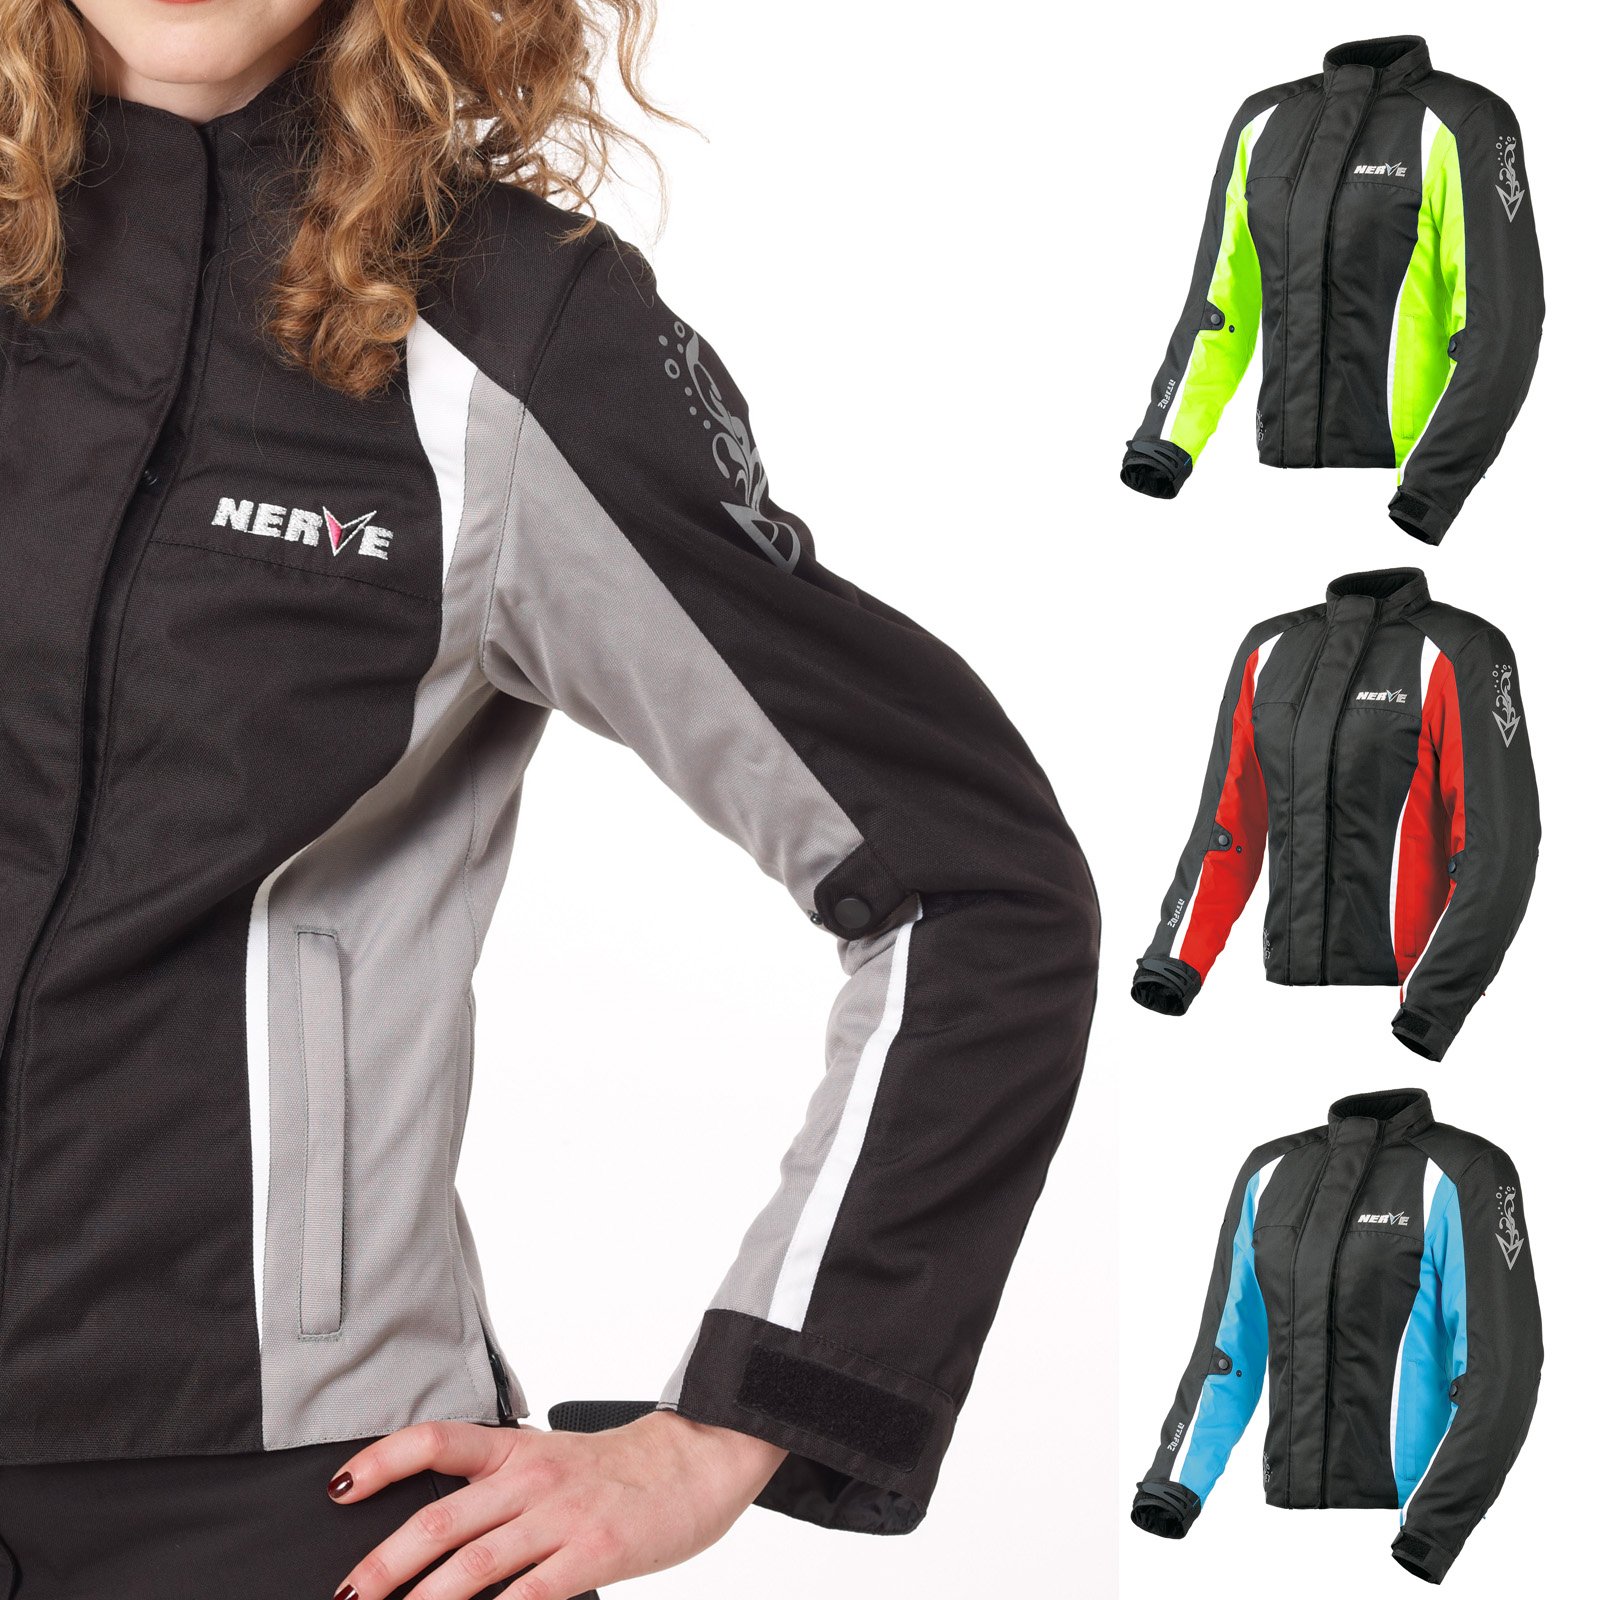 Nerve Shop Motorradjacke -Unique- Motorrad Damen Wasserdicht Jacke mit Protektoren Sommer Winter Textil Frauen - schwarz-silber - 38